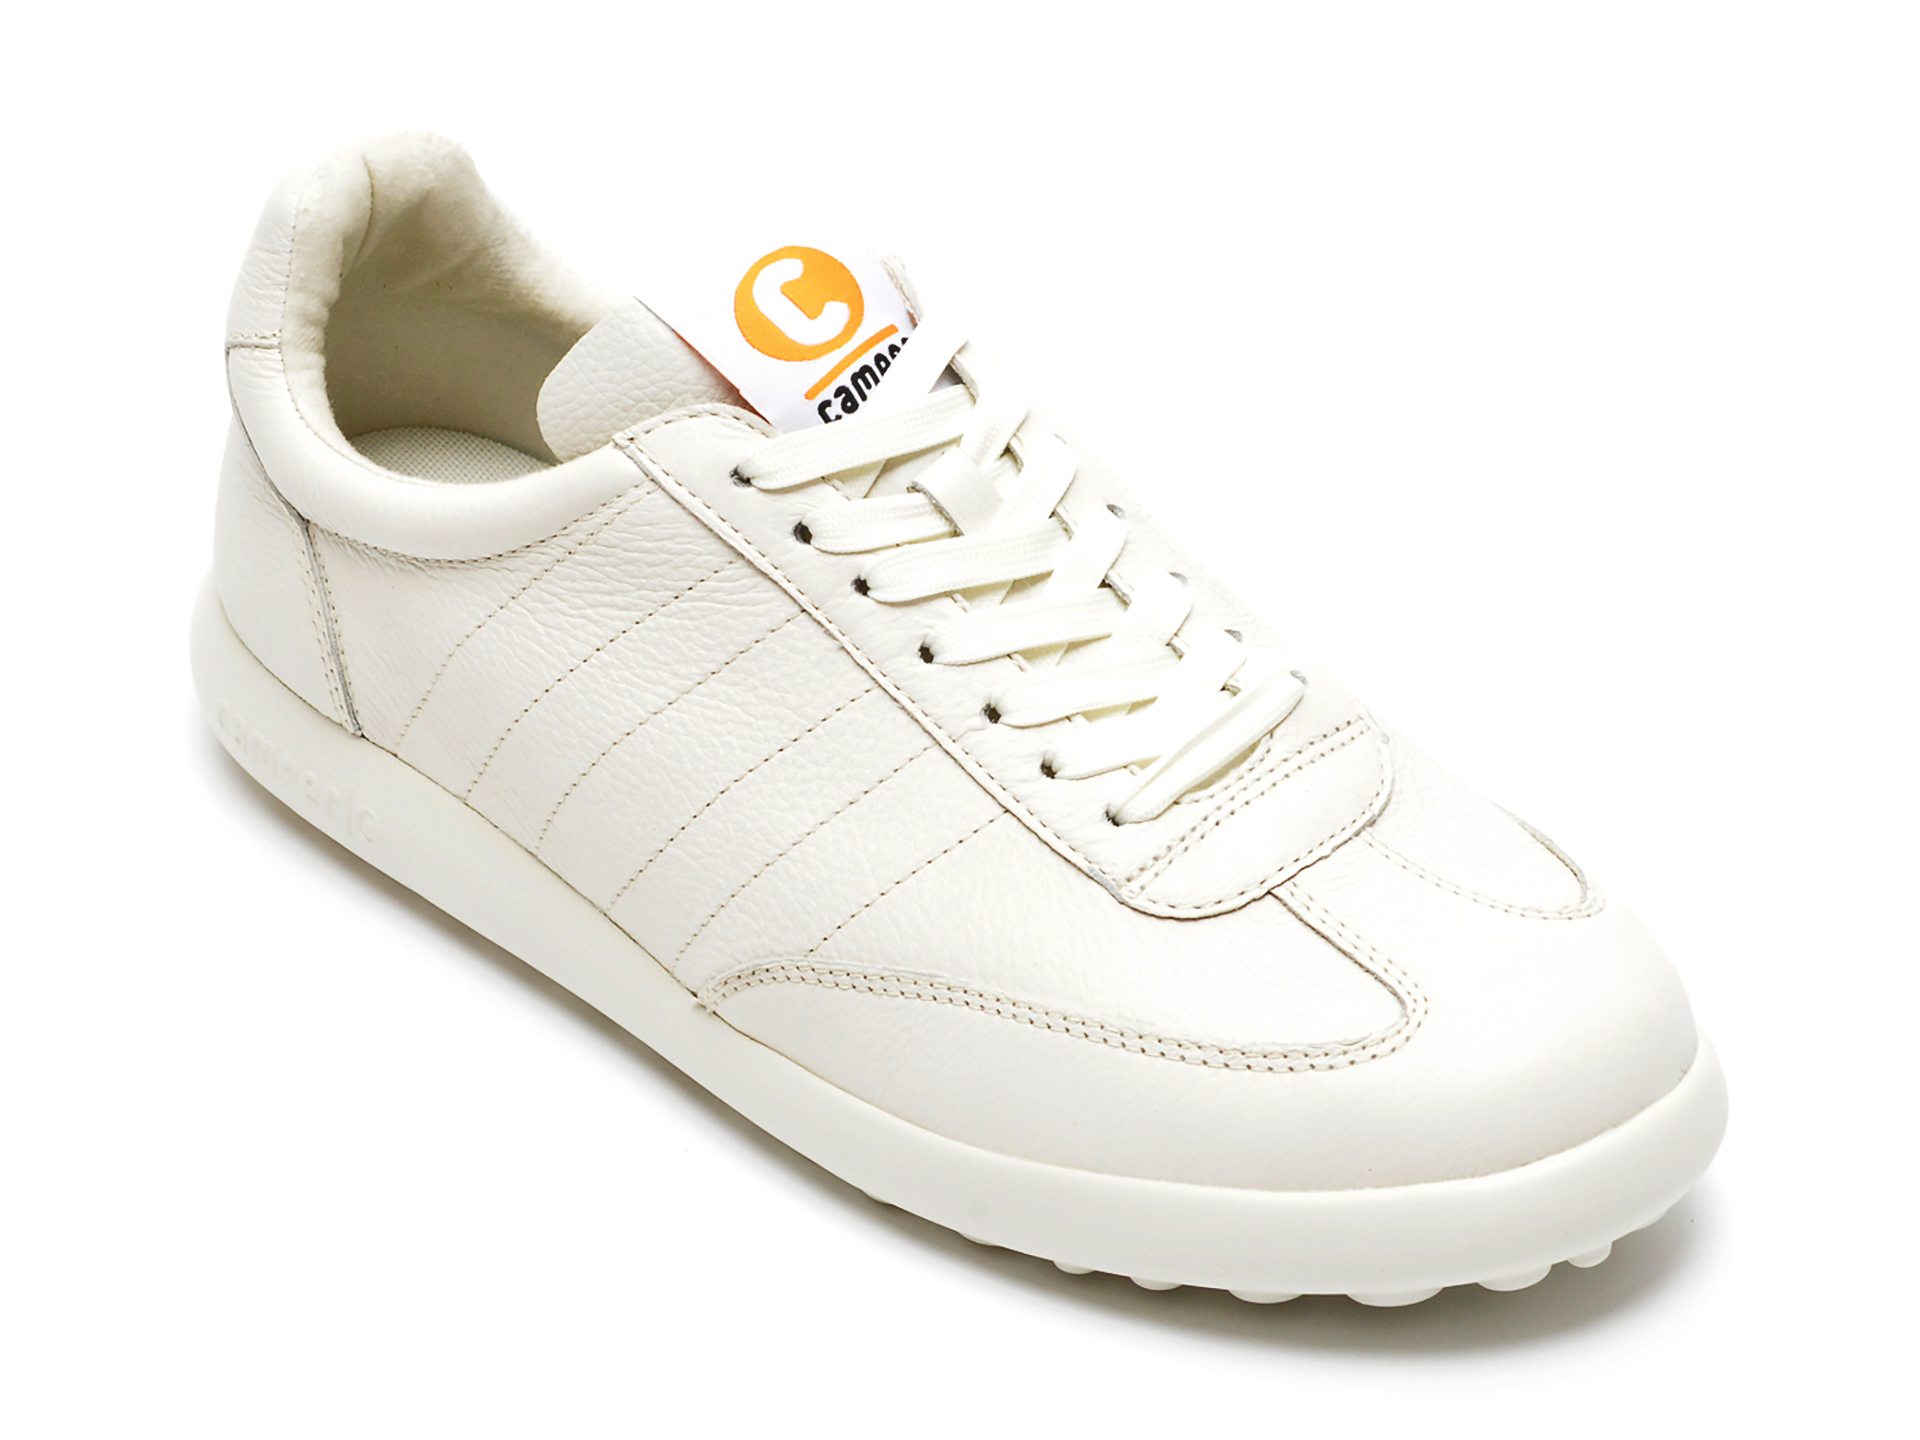 Pantofi sport CAMPER albi, K100817, din piele naturala Camper